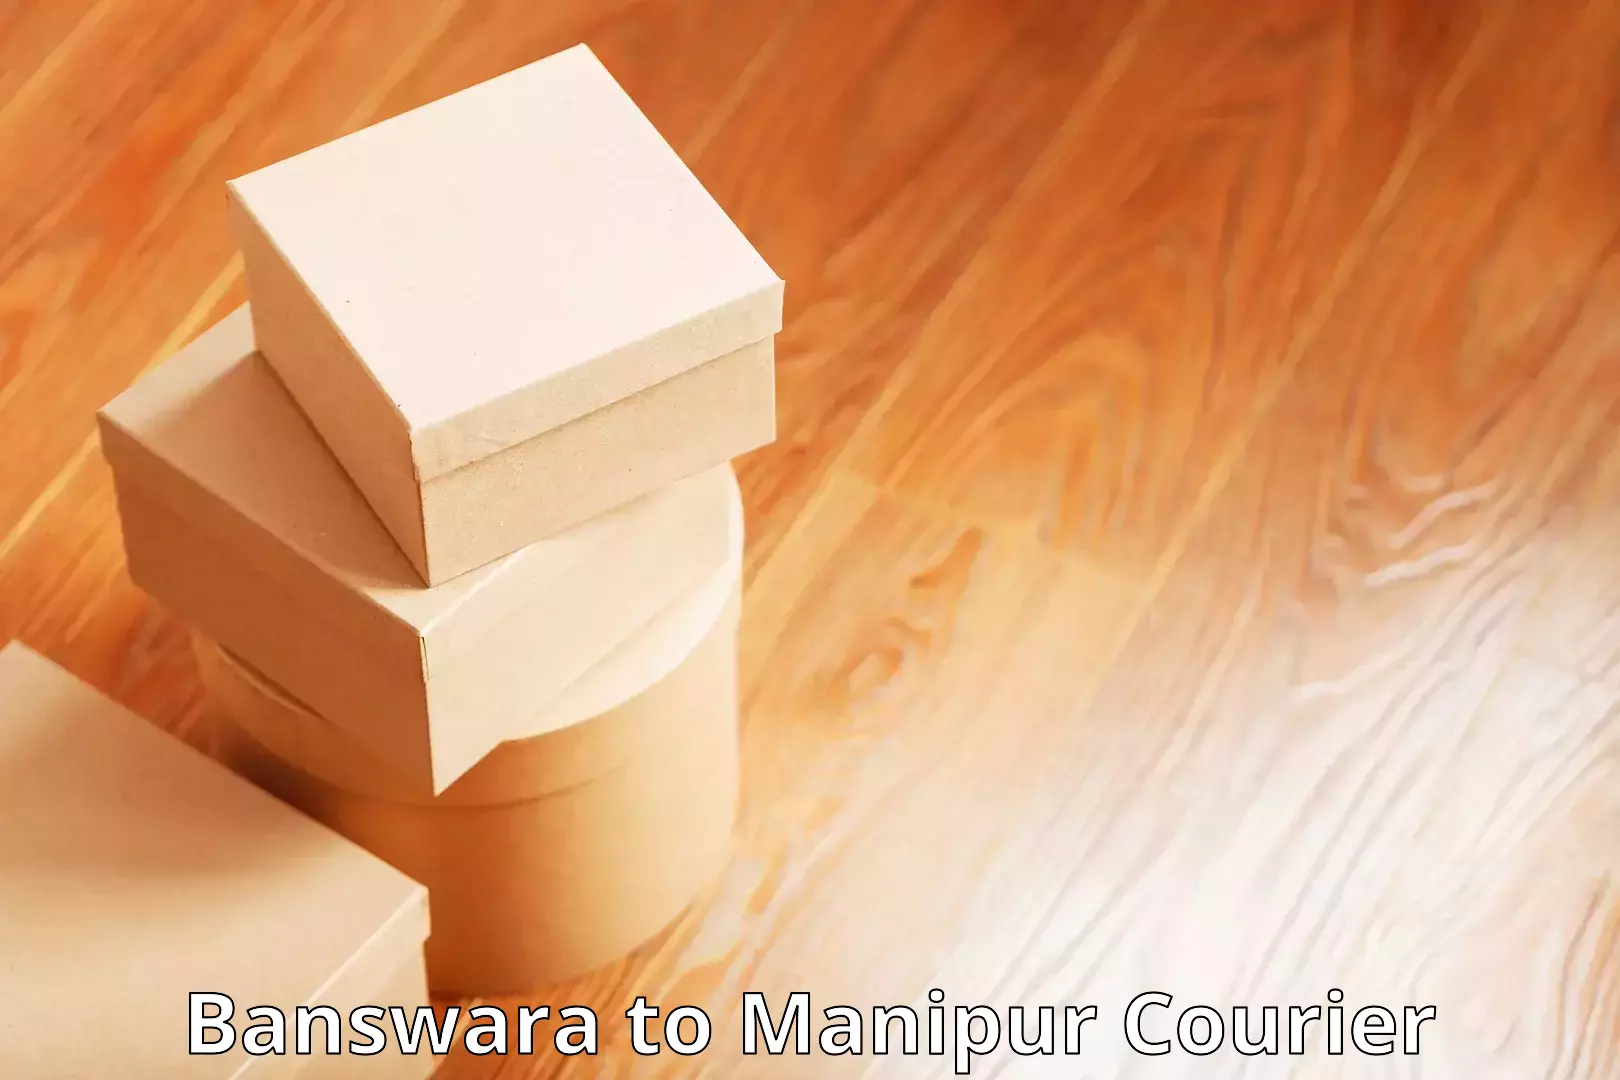 Easy access courier services Banswara to Kanti